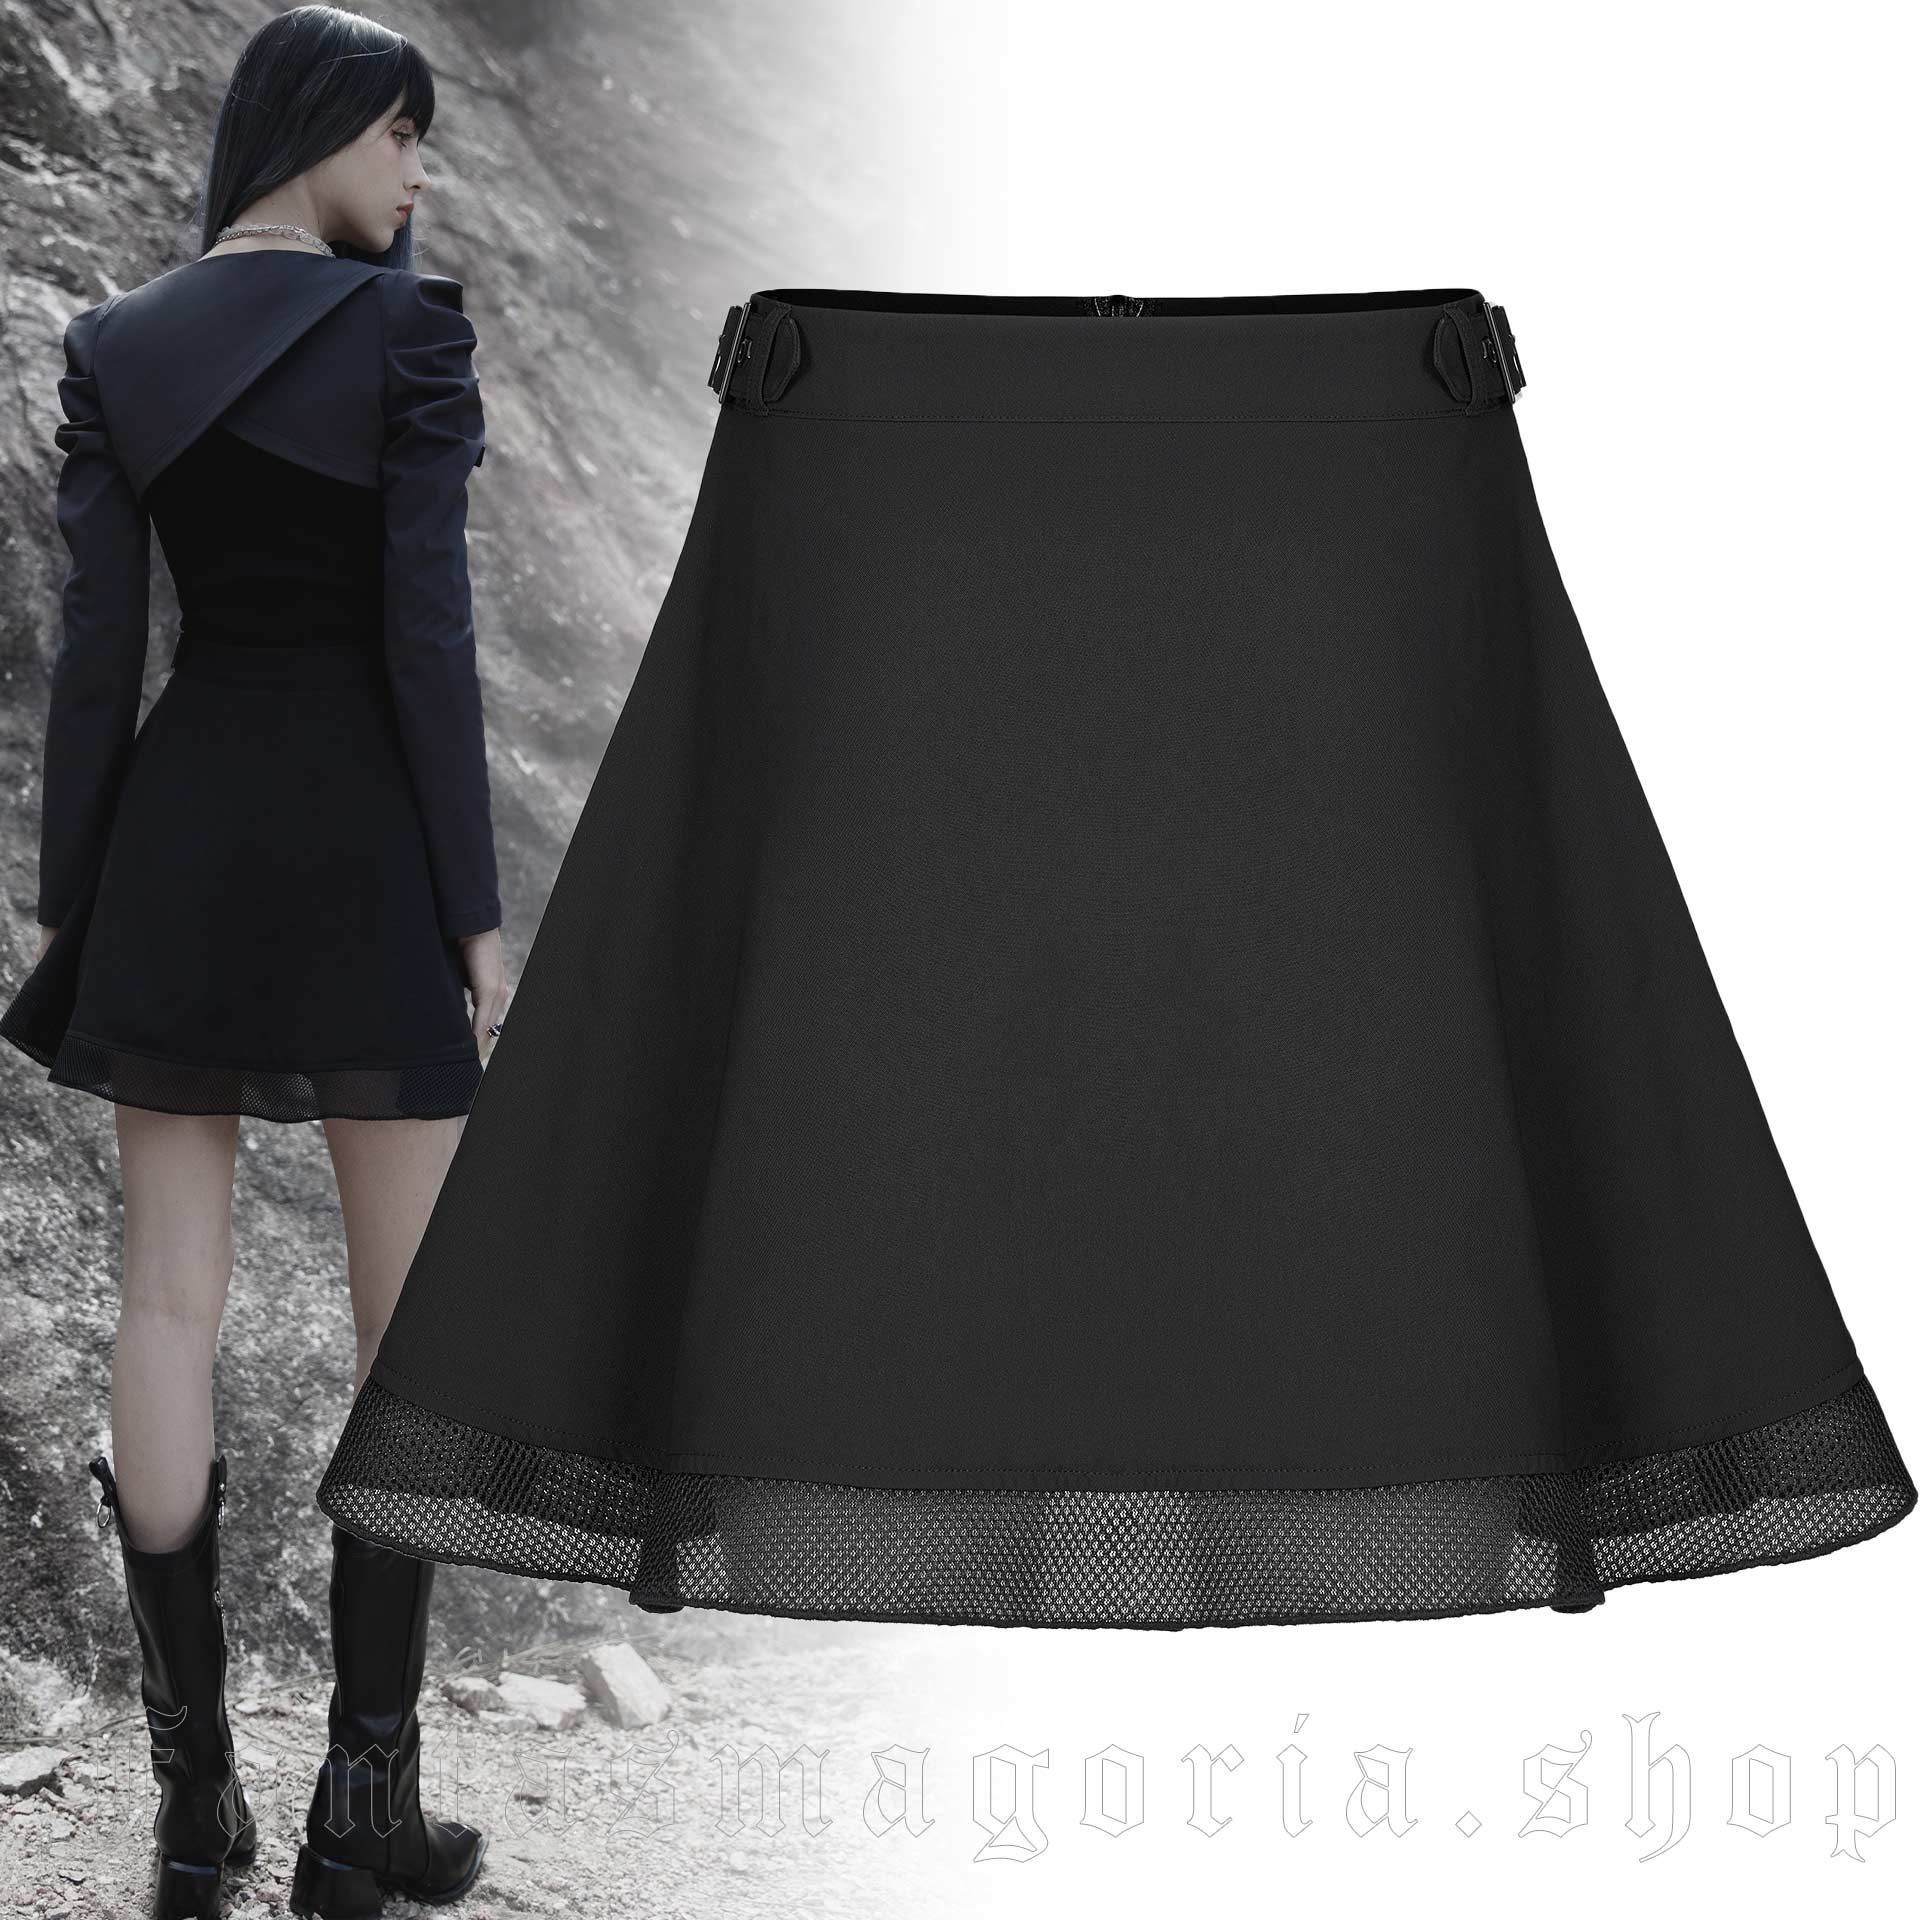 Delta A-Line Skirt